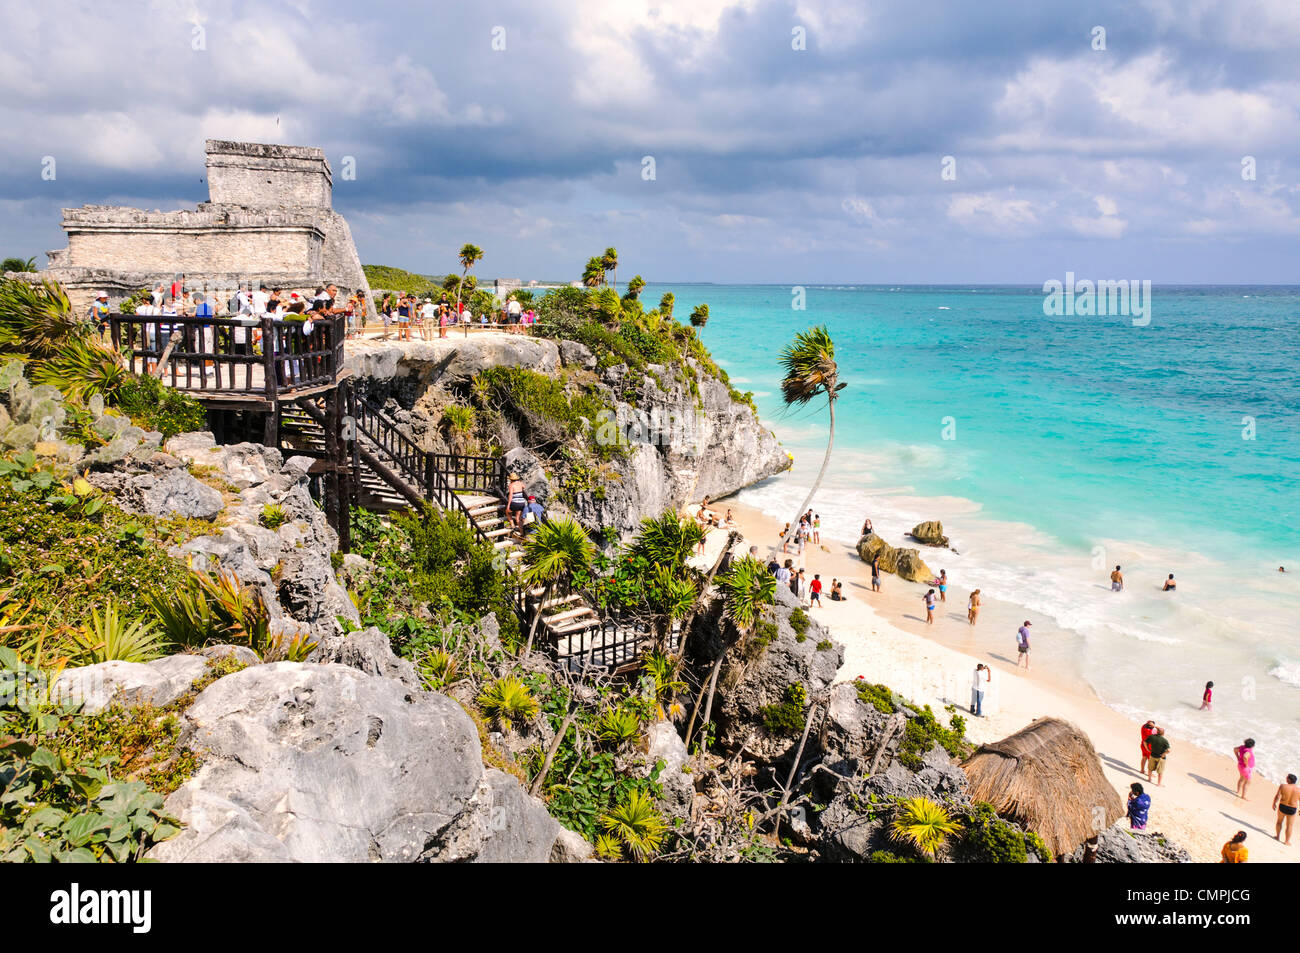 TULUM, Mexique - Les ruines de la civilisation Maya city à Tulum, sur la côte de la péninsule du Yucatan au Mexique. En haut à gauche est la structure de pierre connu sous le nom d'El Castillo. Dans le centre est une passerelle des ruines jusqu'à la plage de sable blanc ci-dessous. Banque D'Images